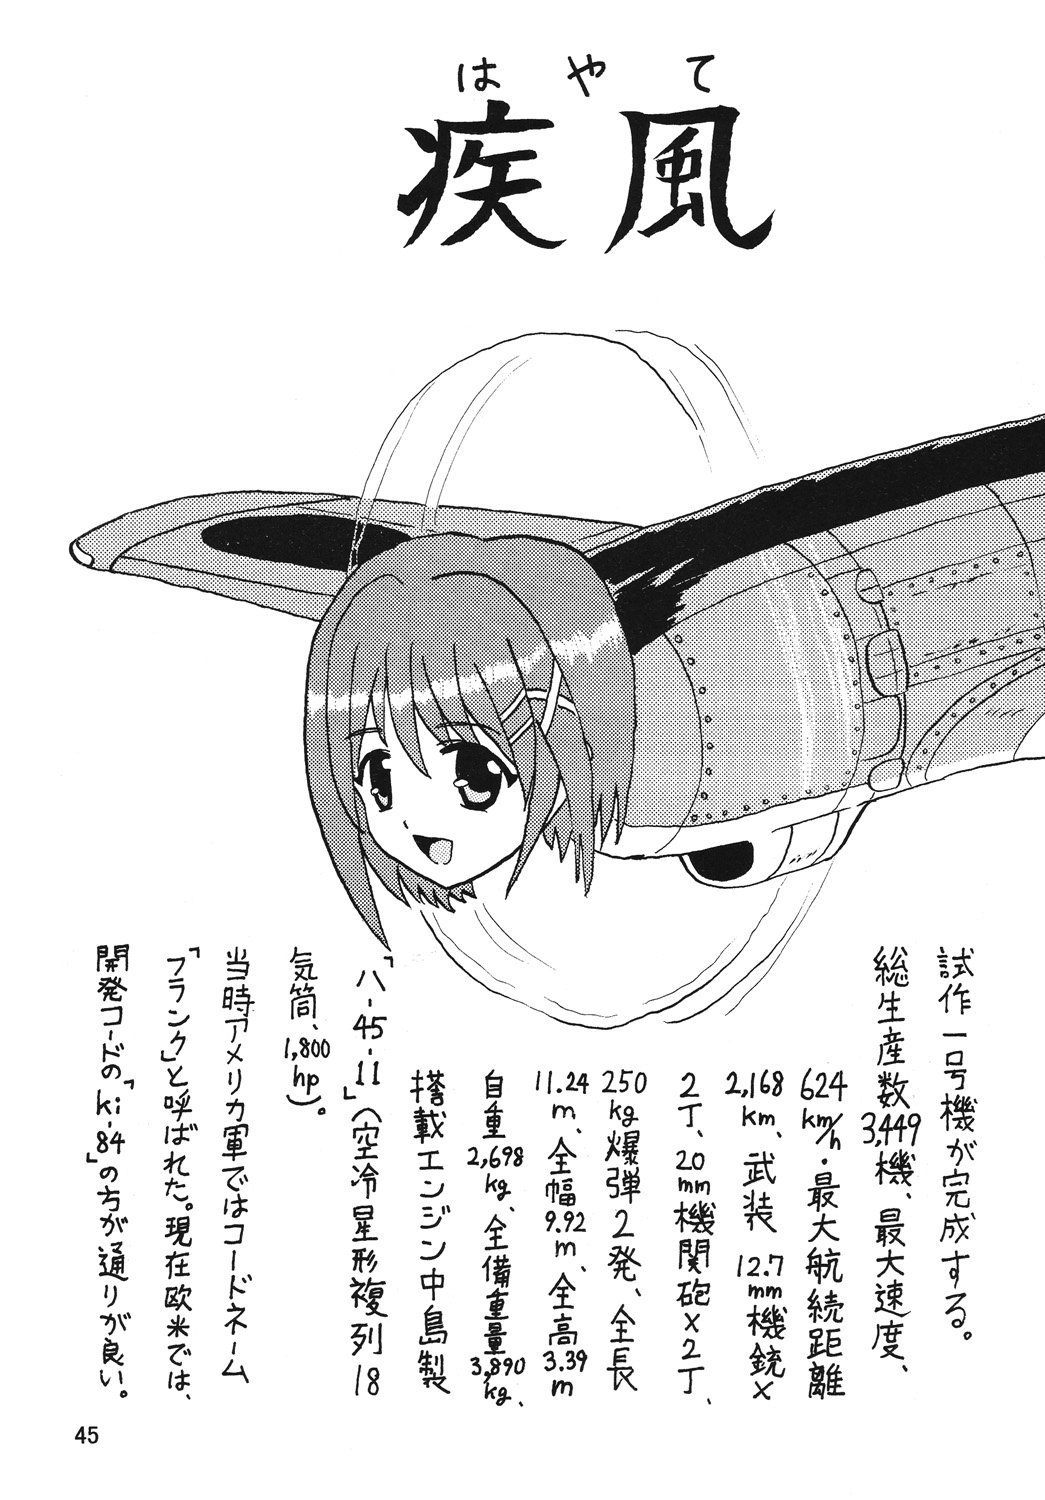 [Thirty Saver Street 2D Shooting] Storage Ignition 4 (Mahou Shoujo Lyrical Nanoha / Magical Girl Lyrical Nanoha) page 44 full